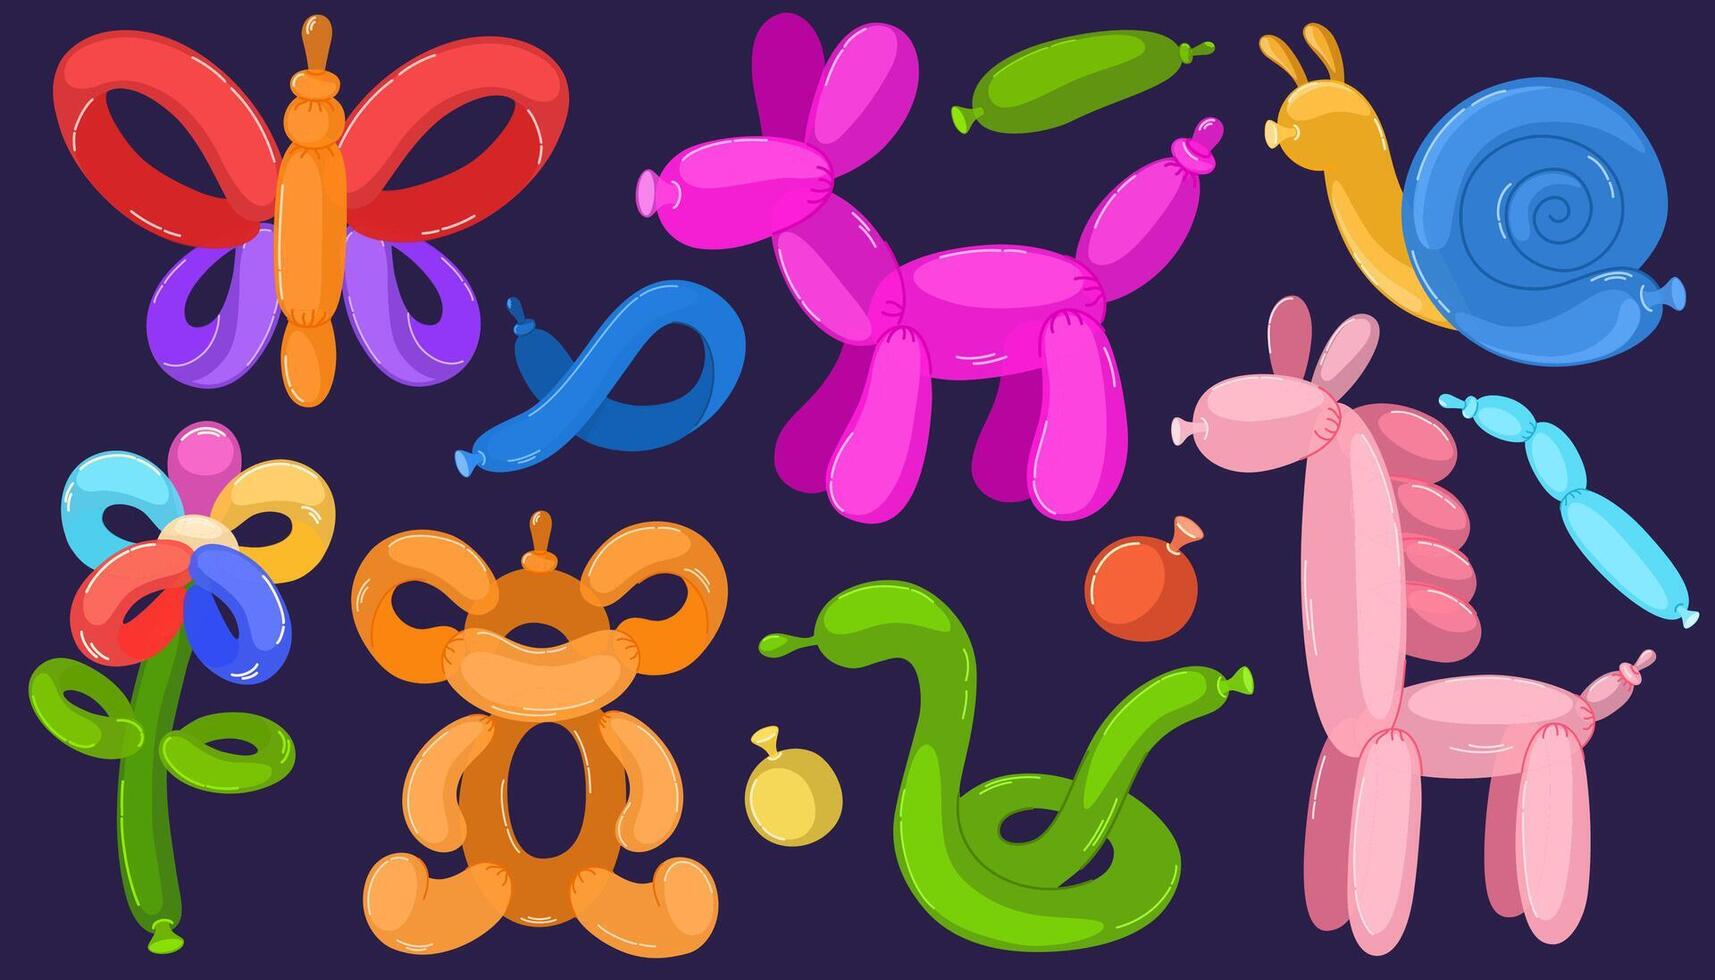 Ballon Haustiere Satz. Karikatur Helium Tier Figuren, bunt Blase Tiere. Spielzeuge zum Kinder Festival, Geburtstag Party. Unterhaltung Ausrüstung, Schmetterling, Blume, Haustiere. Vektor Hand zeichnen Illustration